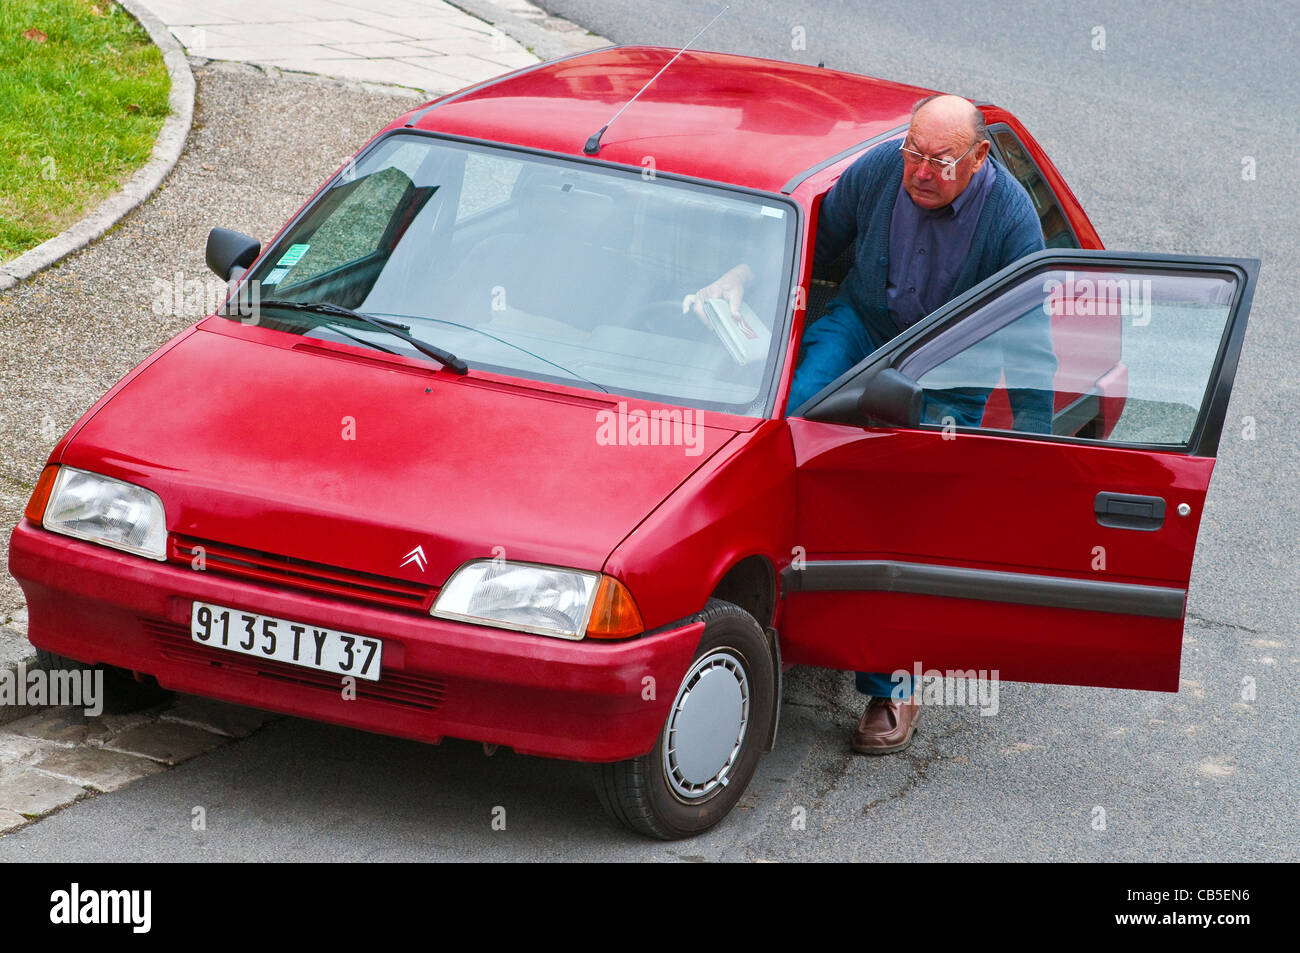 Pkw-Fahrer nach dem Befüllen in Kfz-Versicherung Antragsformulare - Frankreich. Stockfoto